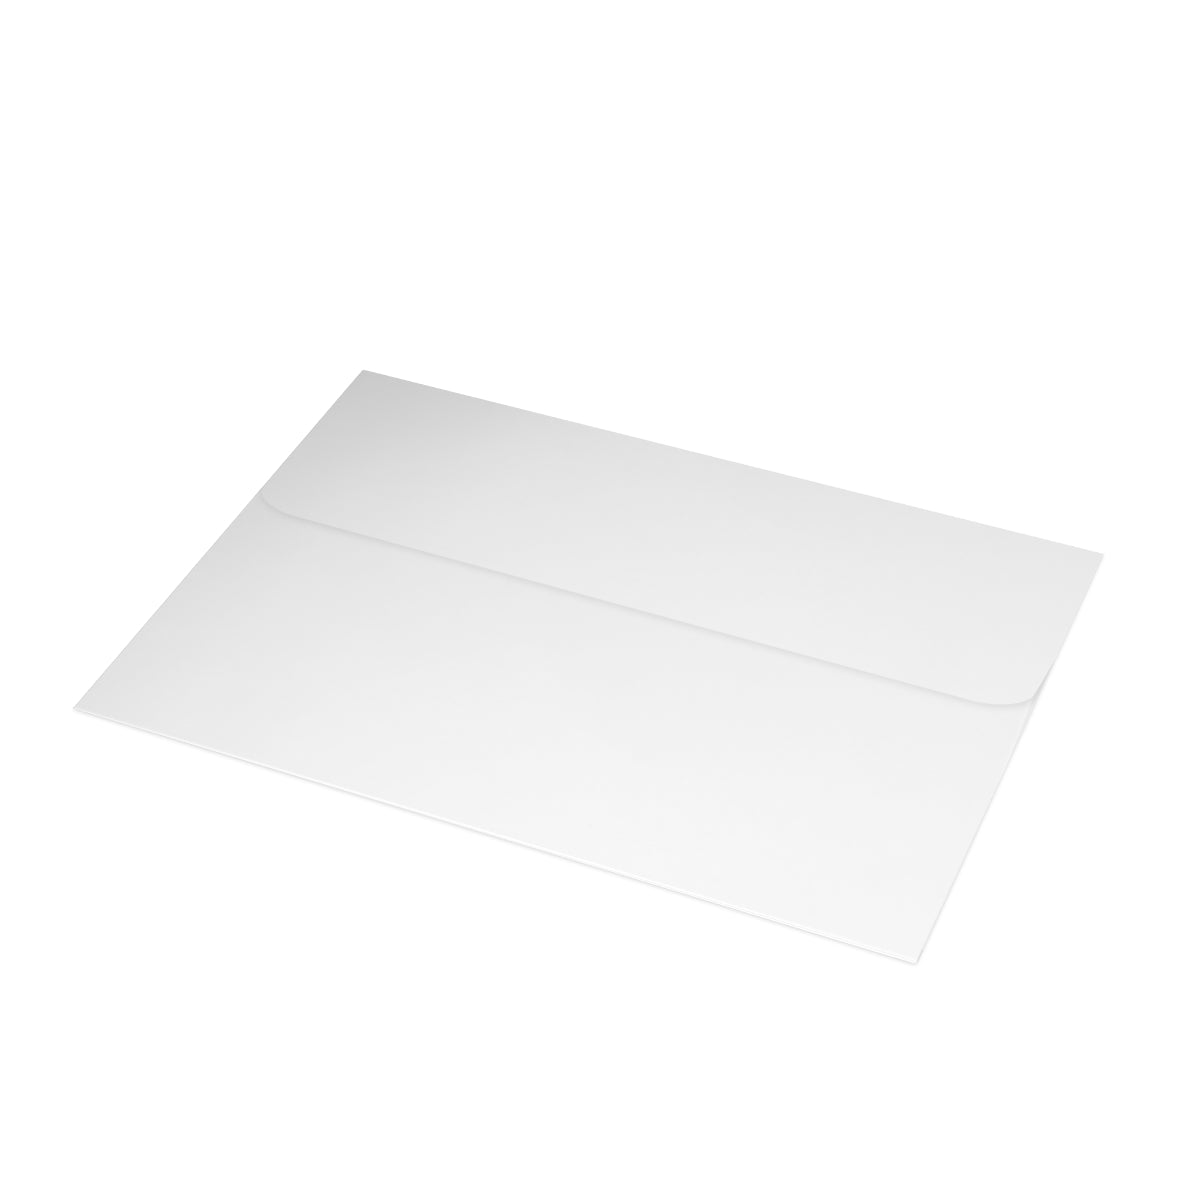 Cartes de notes mates pliées du parc national de Grand Teton + enveloppes (10 pièces)